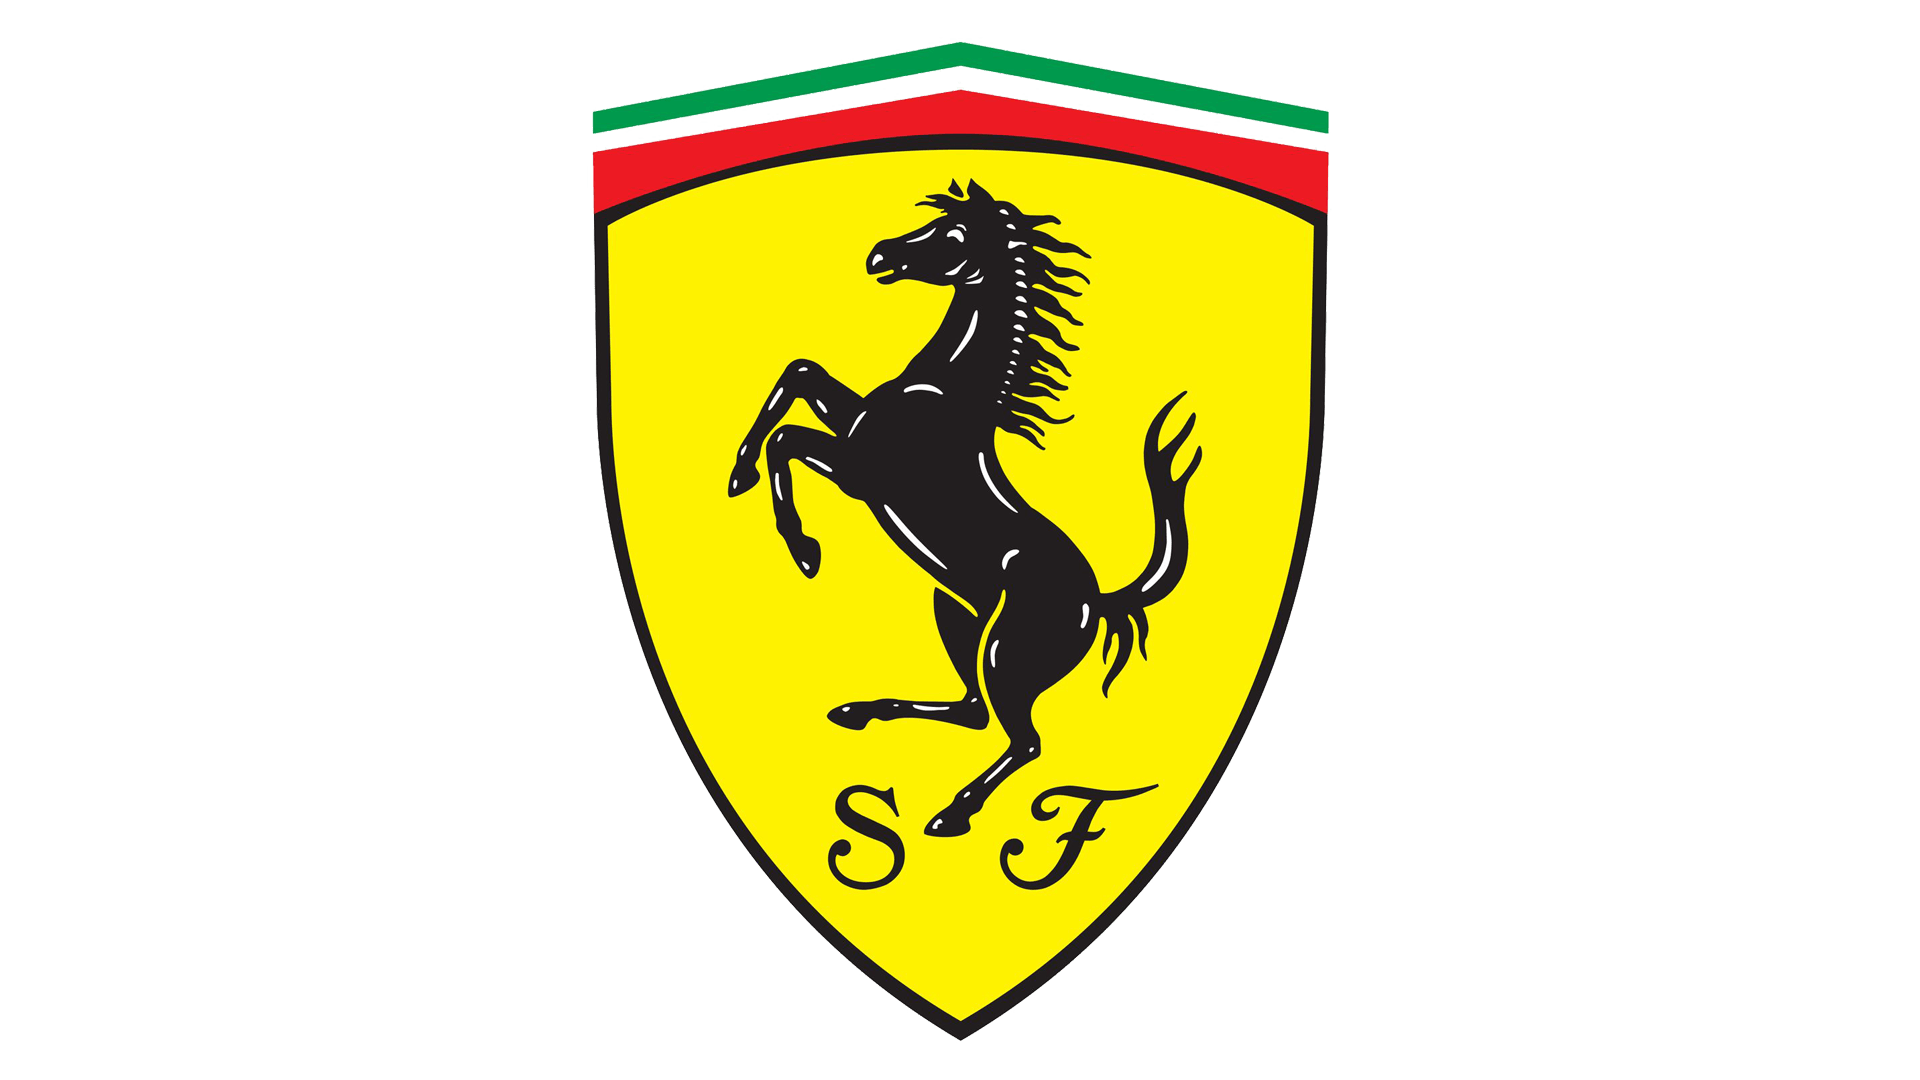 Sport Car Manufacturers Logo - Italian Car Brands, Companies & Manufacturer Logos with Names